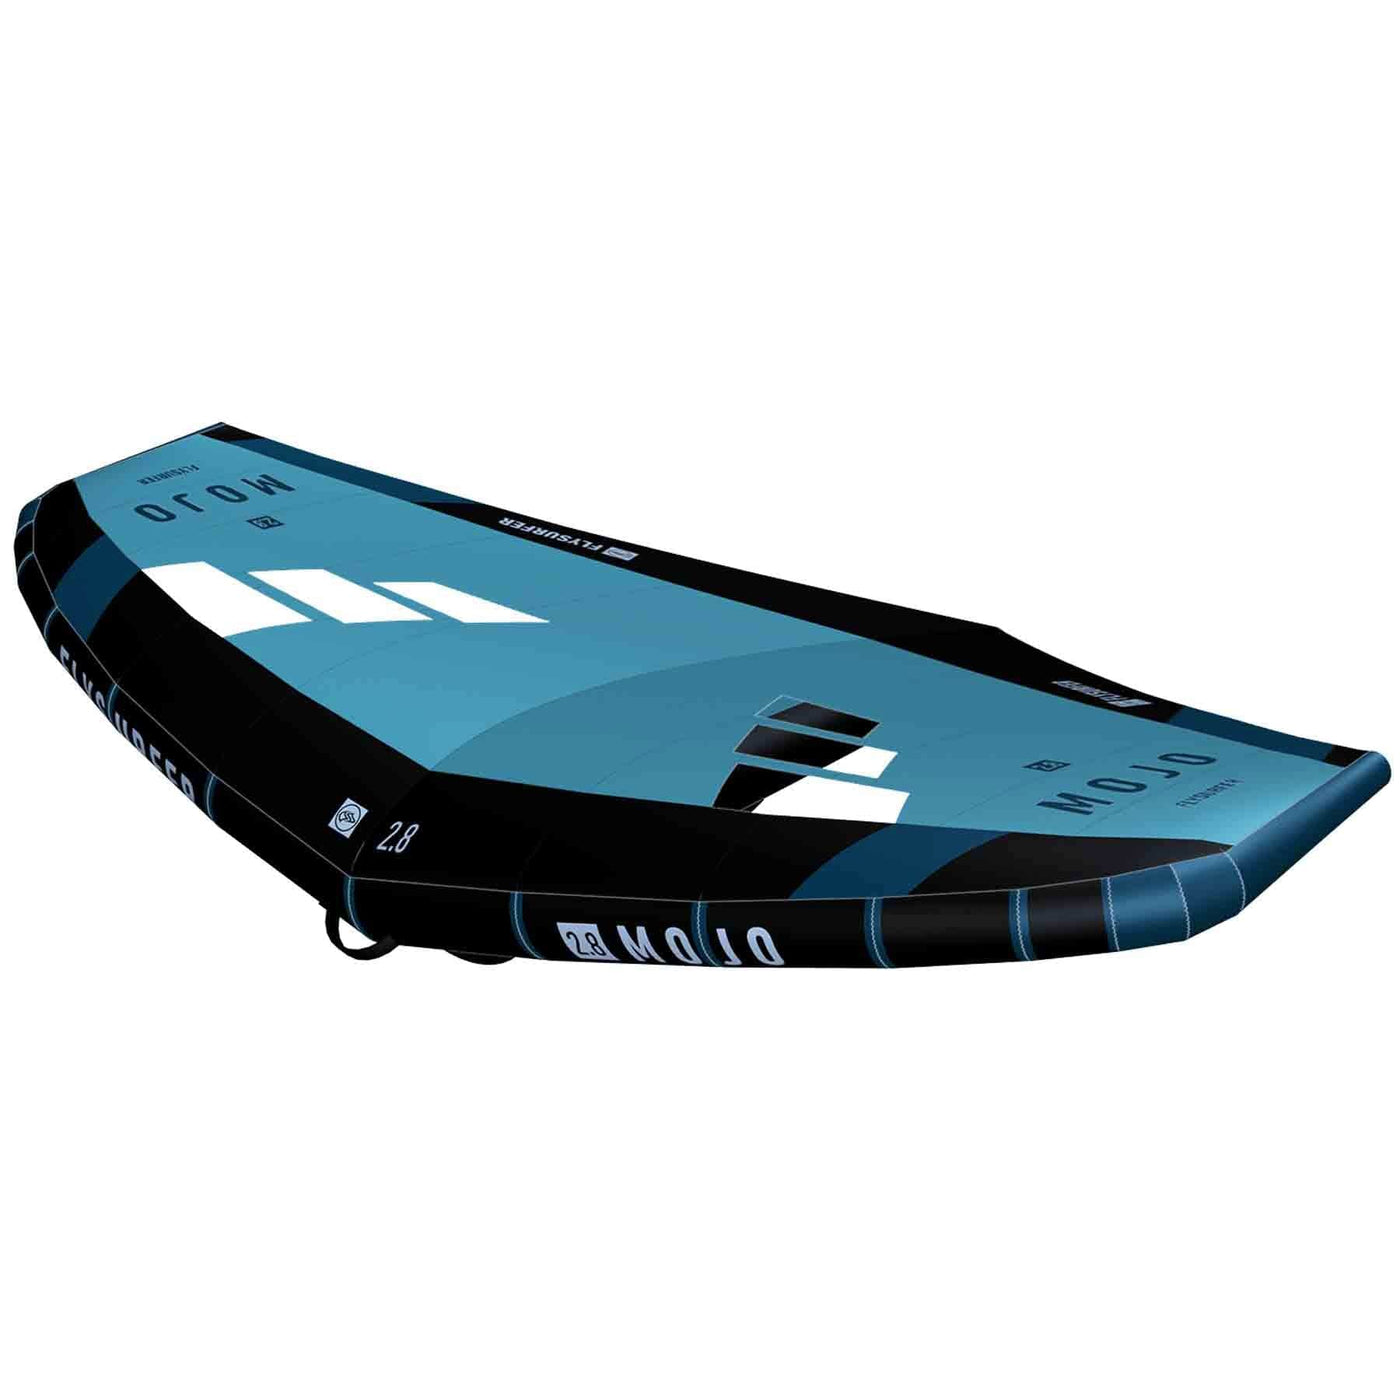 Flysurfer Mojo Wingsurfer (Dark Edition) FLYSURFER